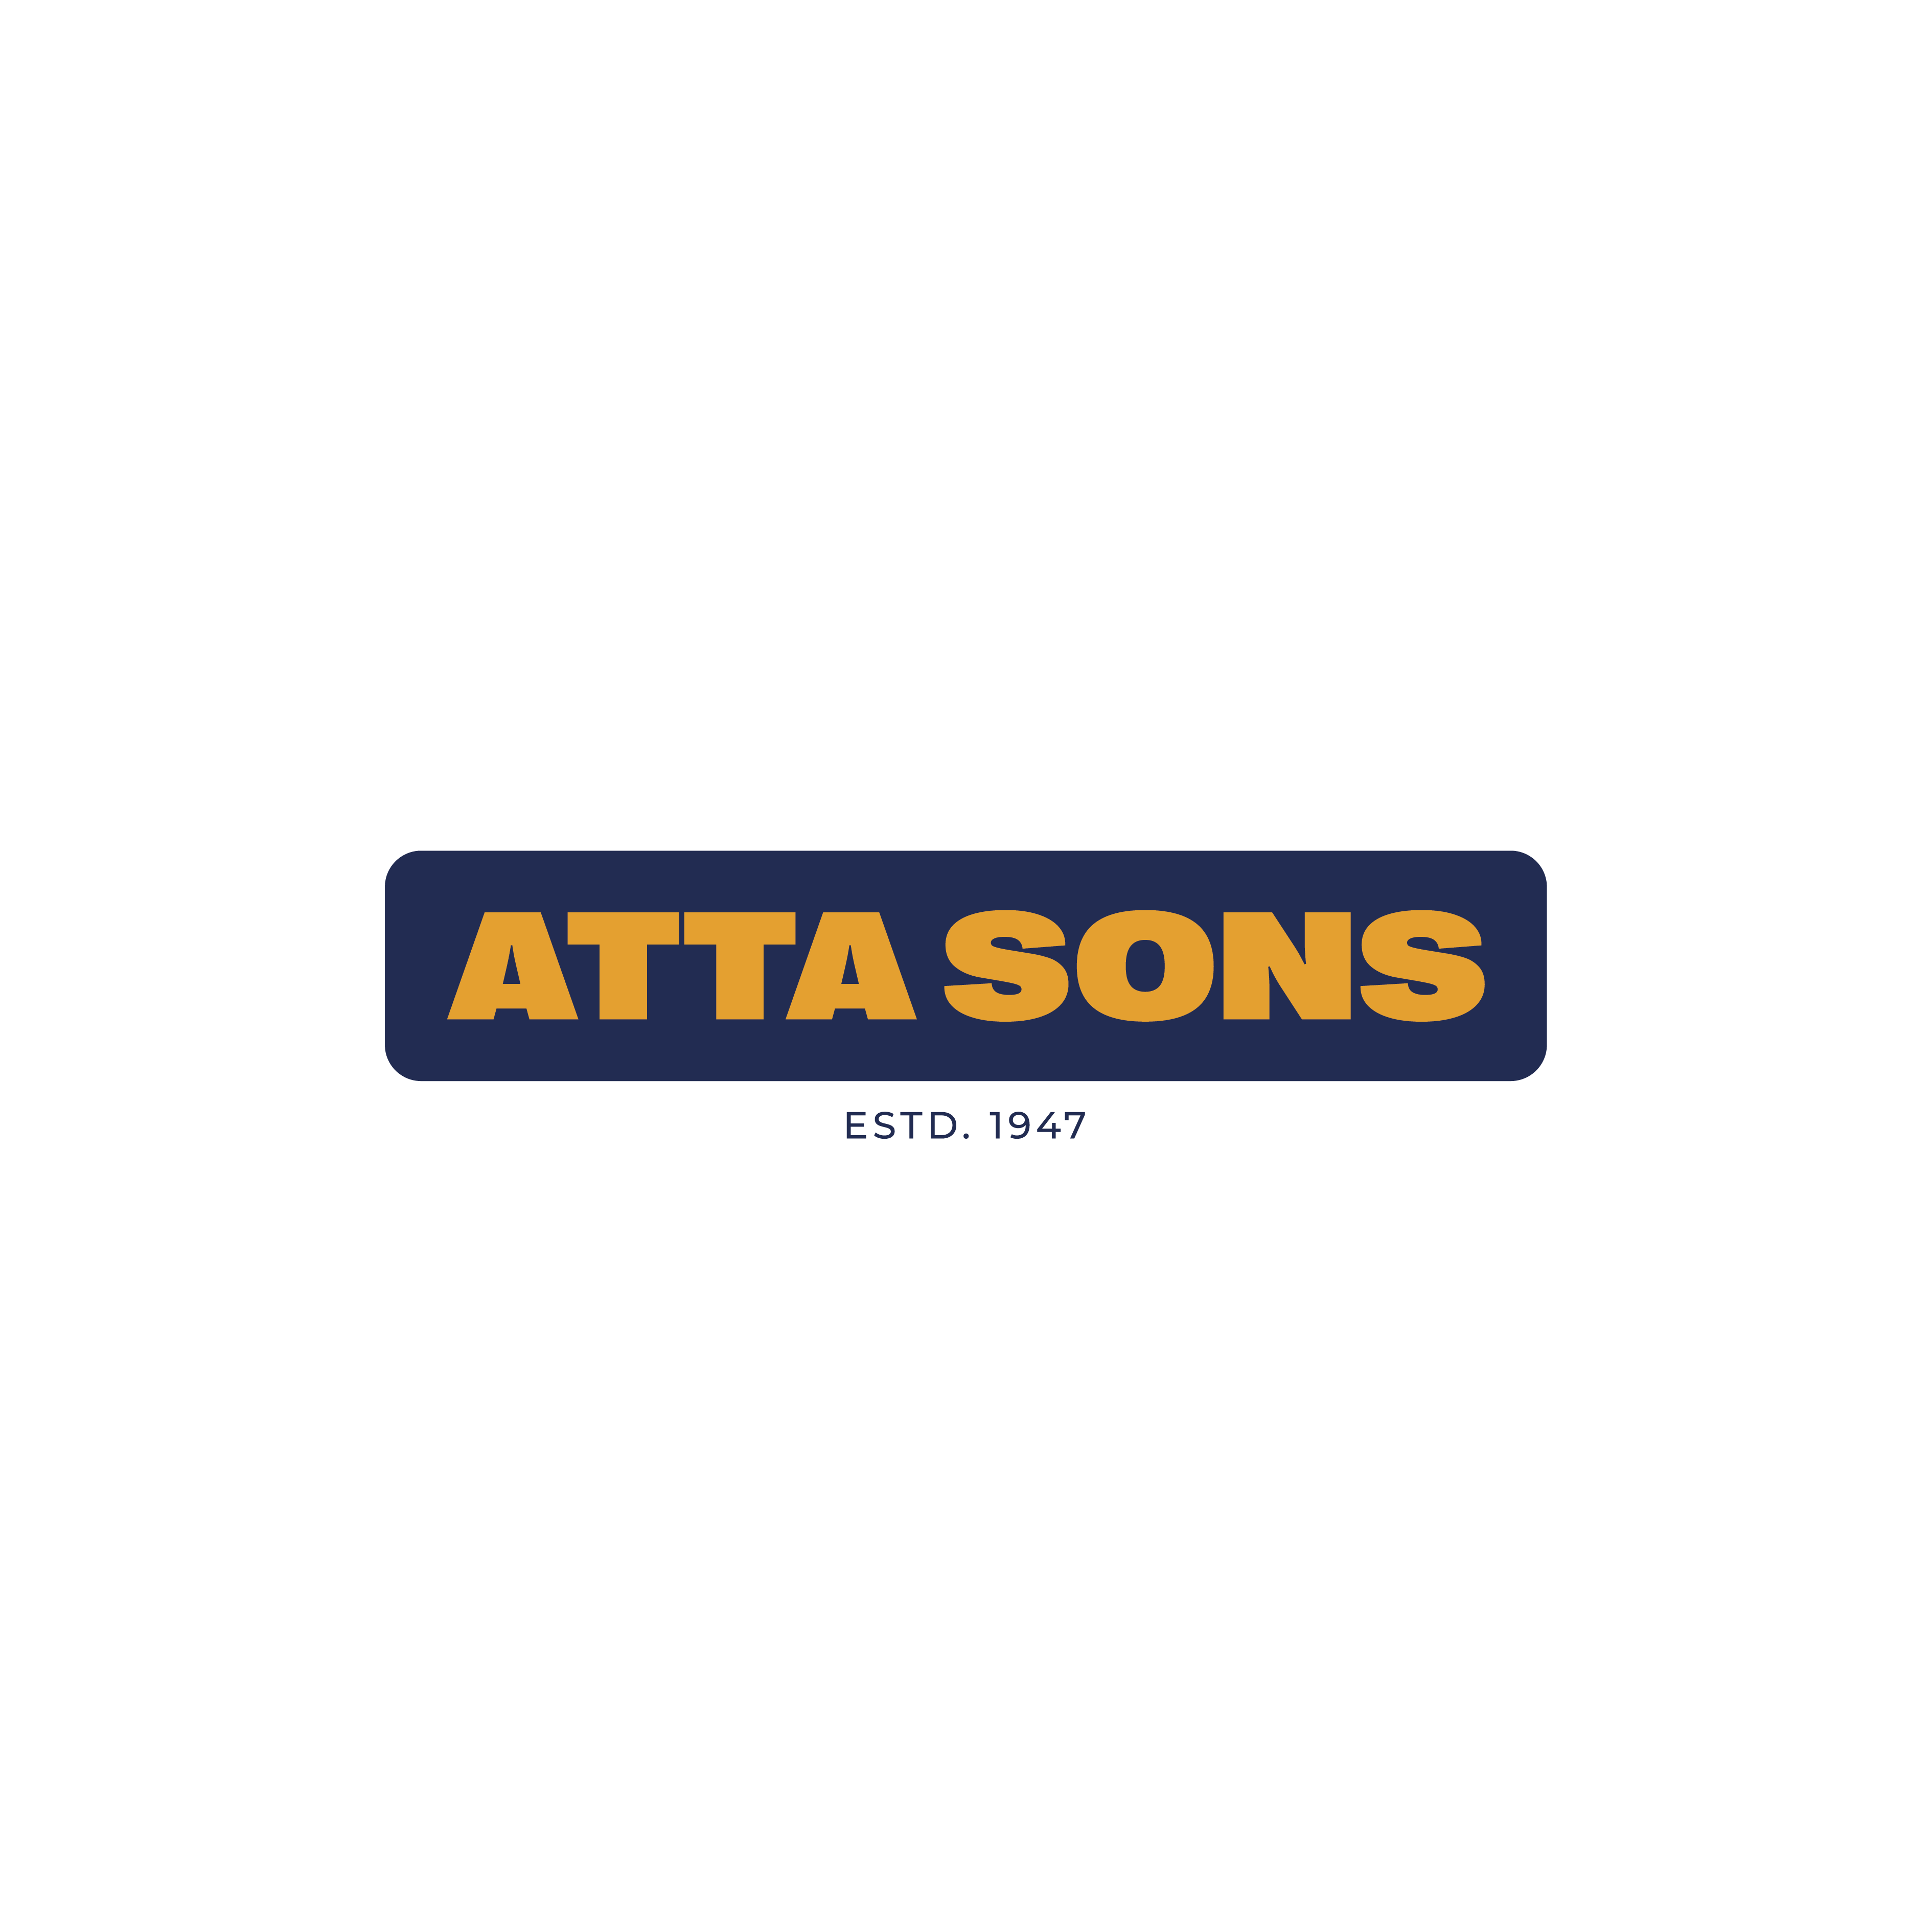 Atta Sons Logo Ade566c7 Bd54 4056 A420 A1a2716aef1b